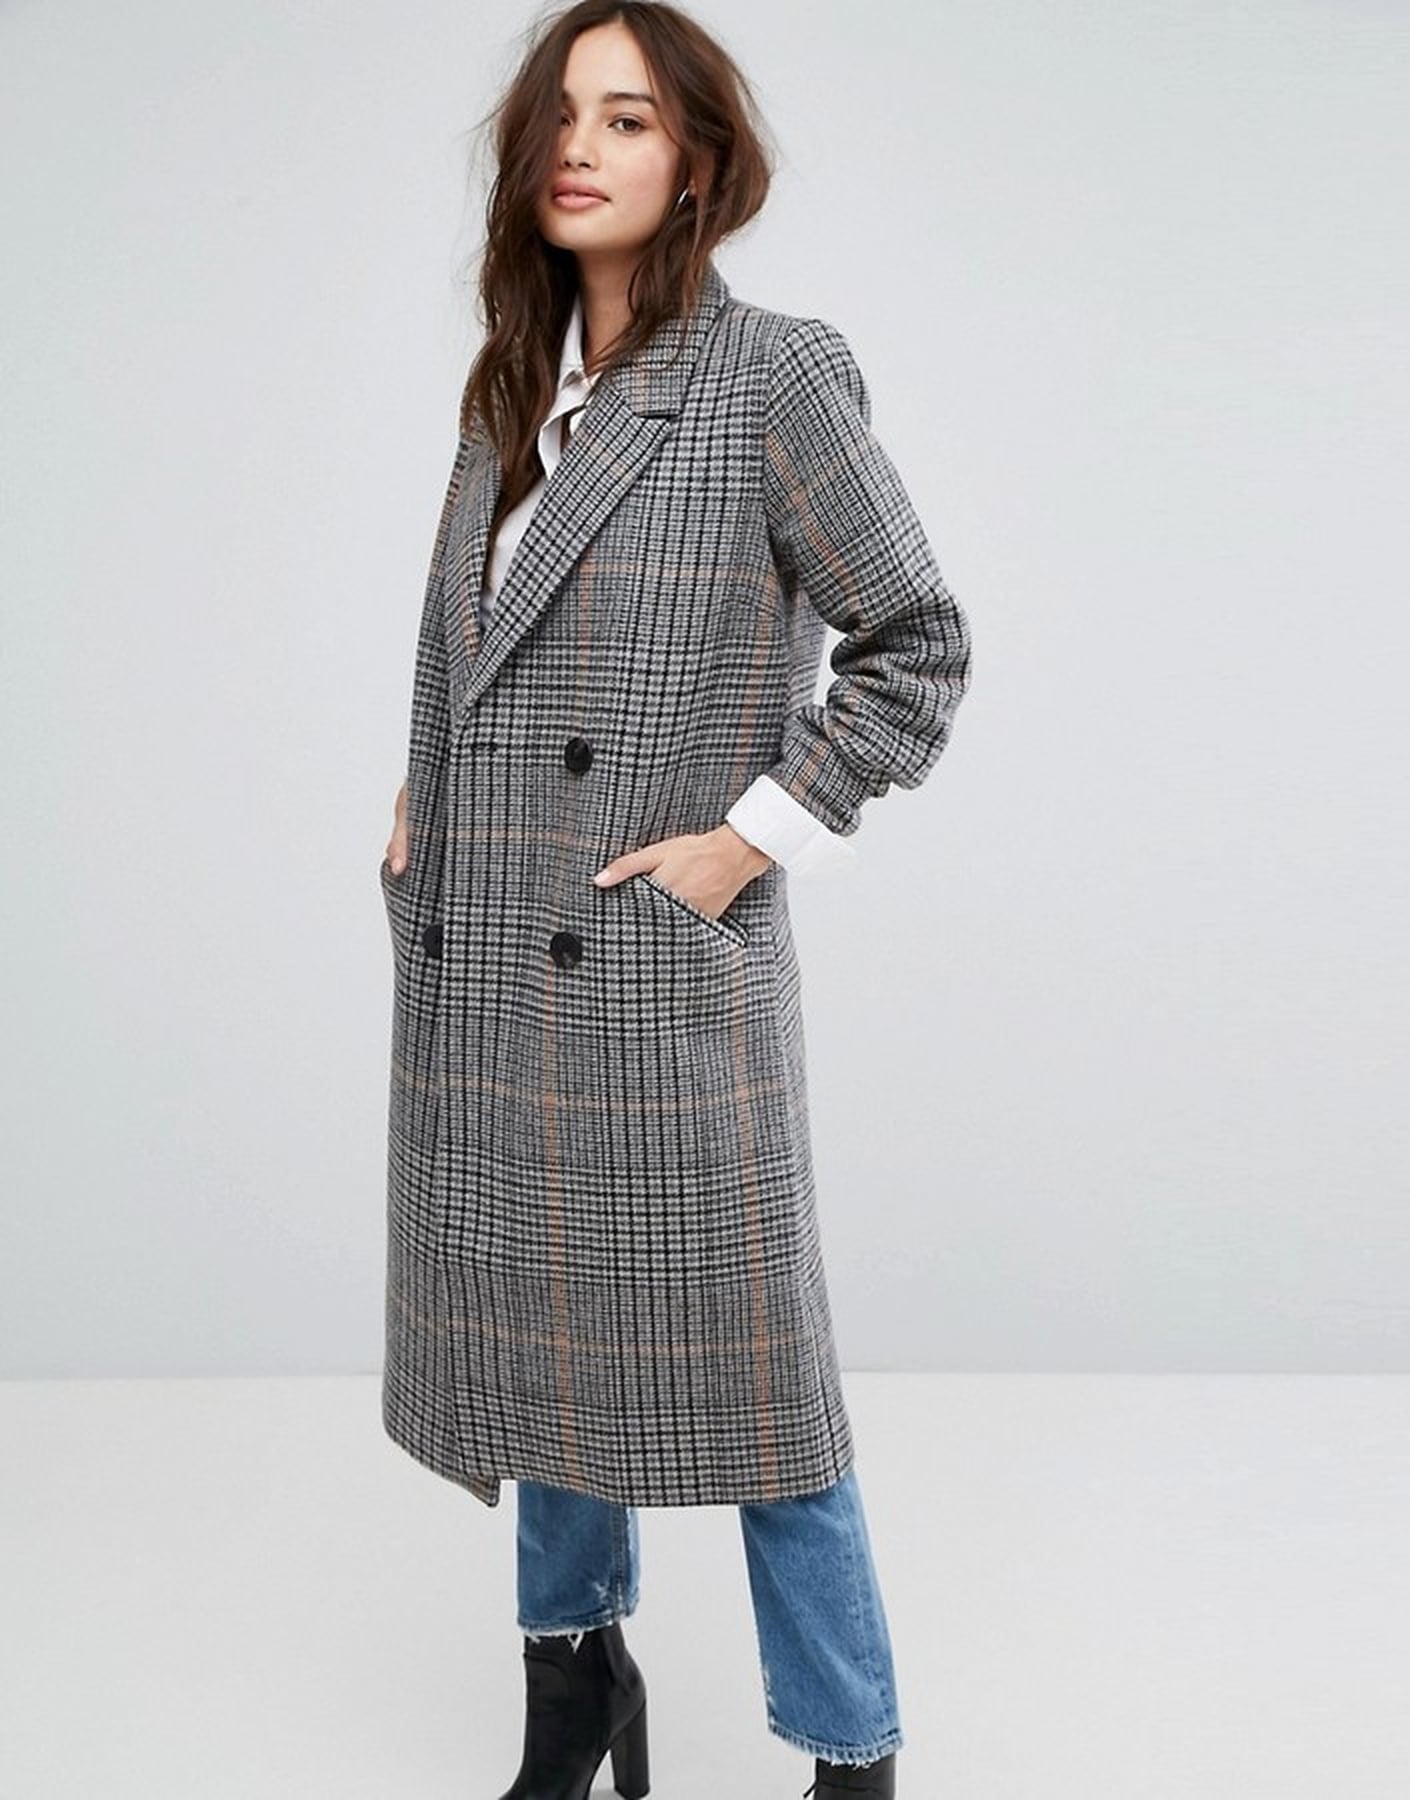 Plaid Coats For Fall 2017 | POPSUGAR Fashion